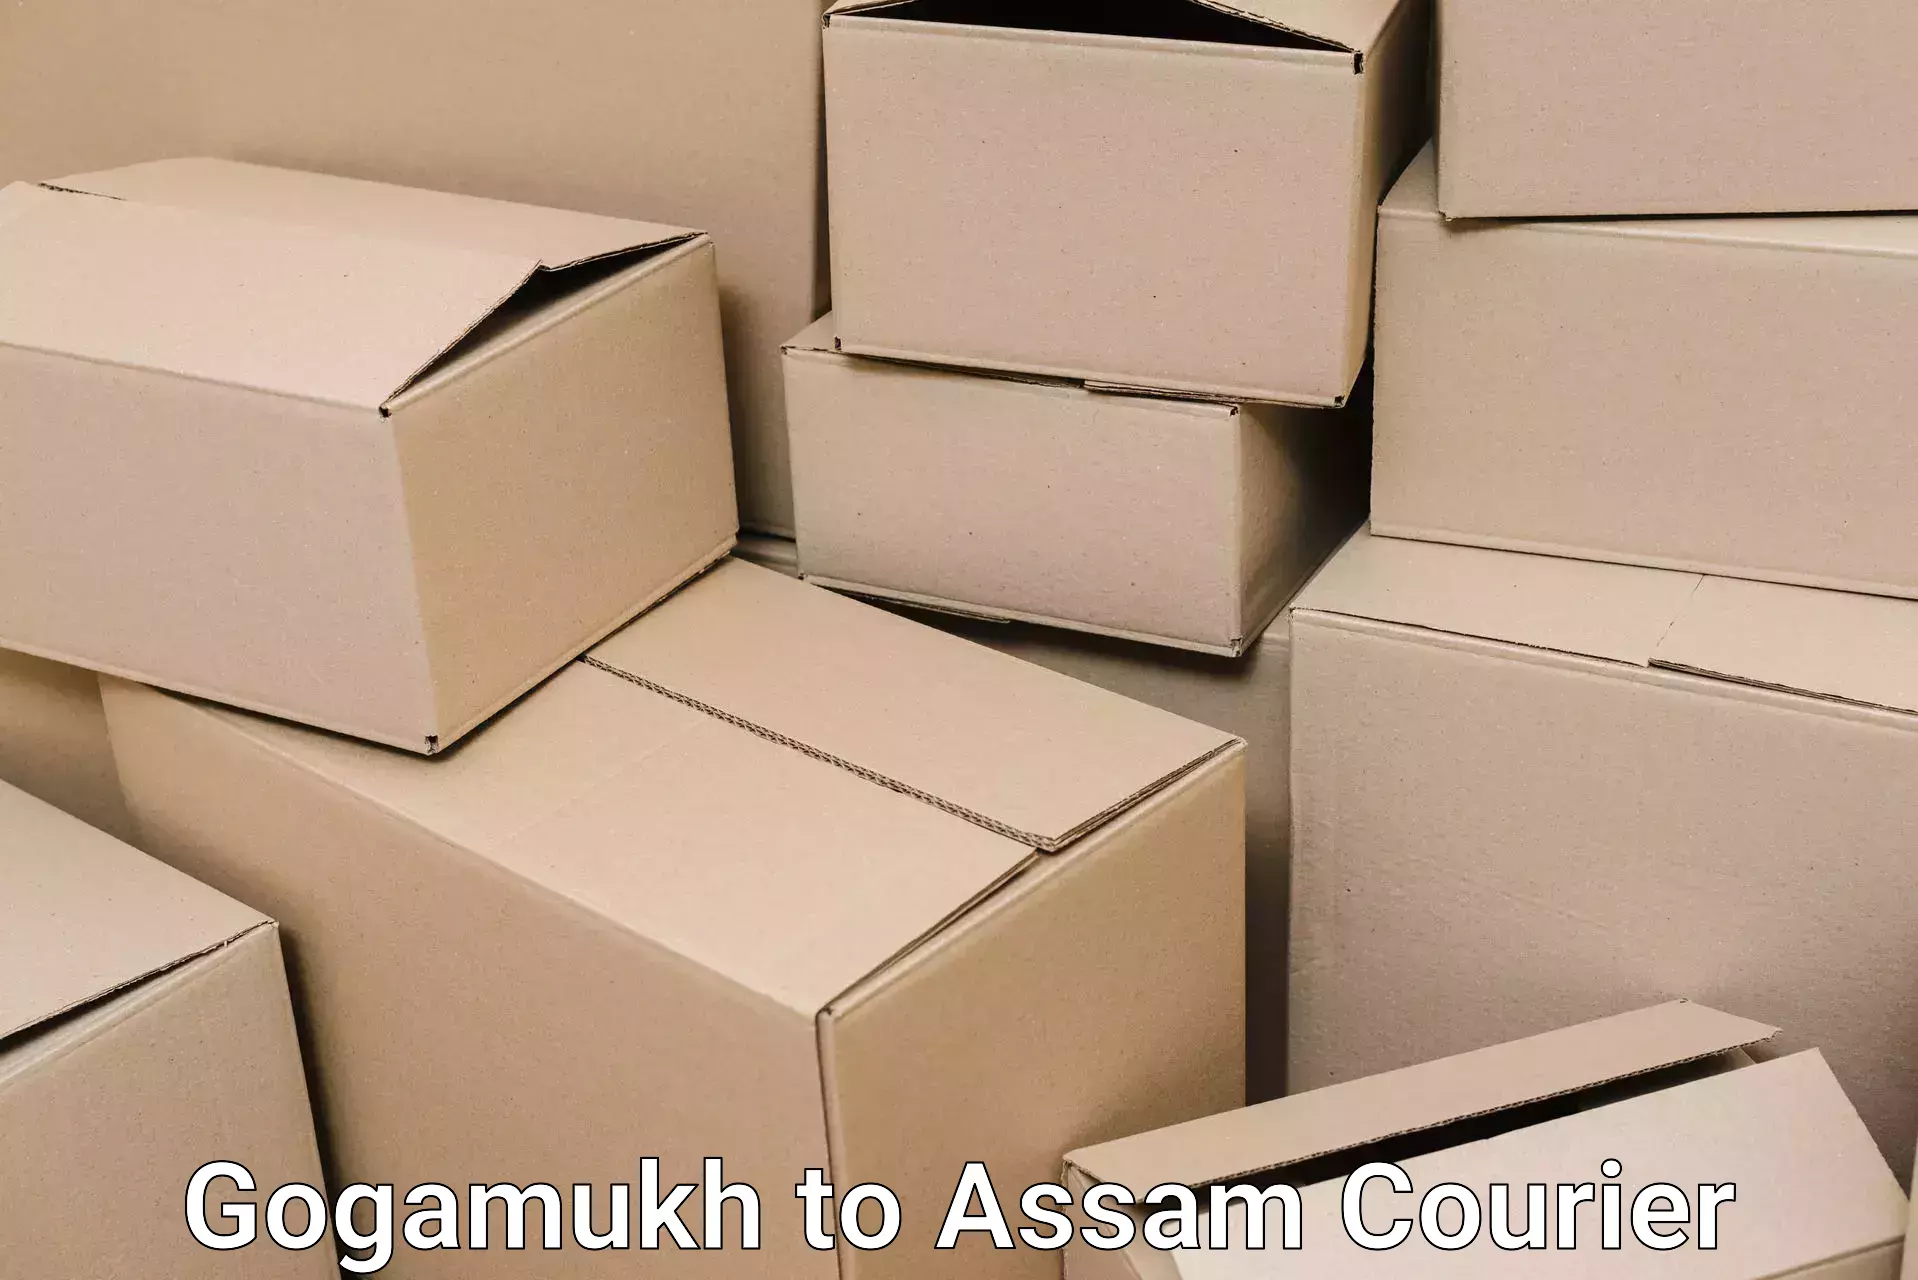 Home goods moving company Gogamukh to Lala Assam